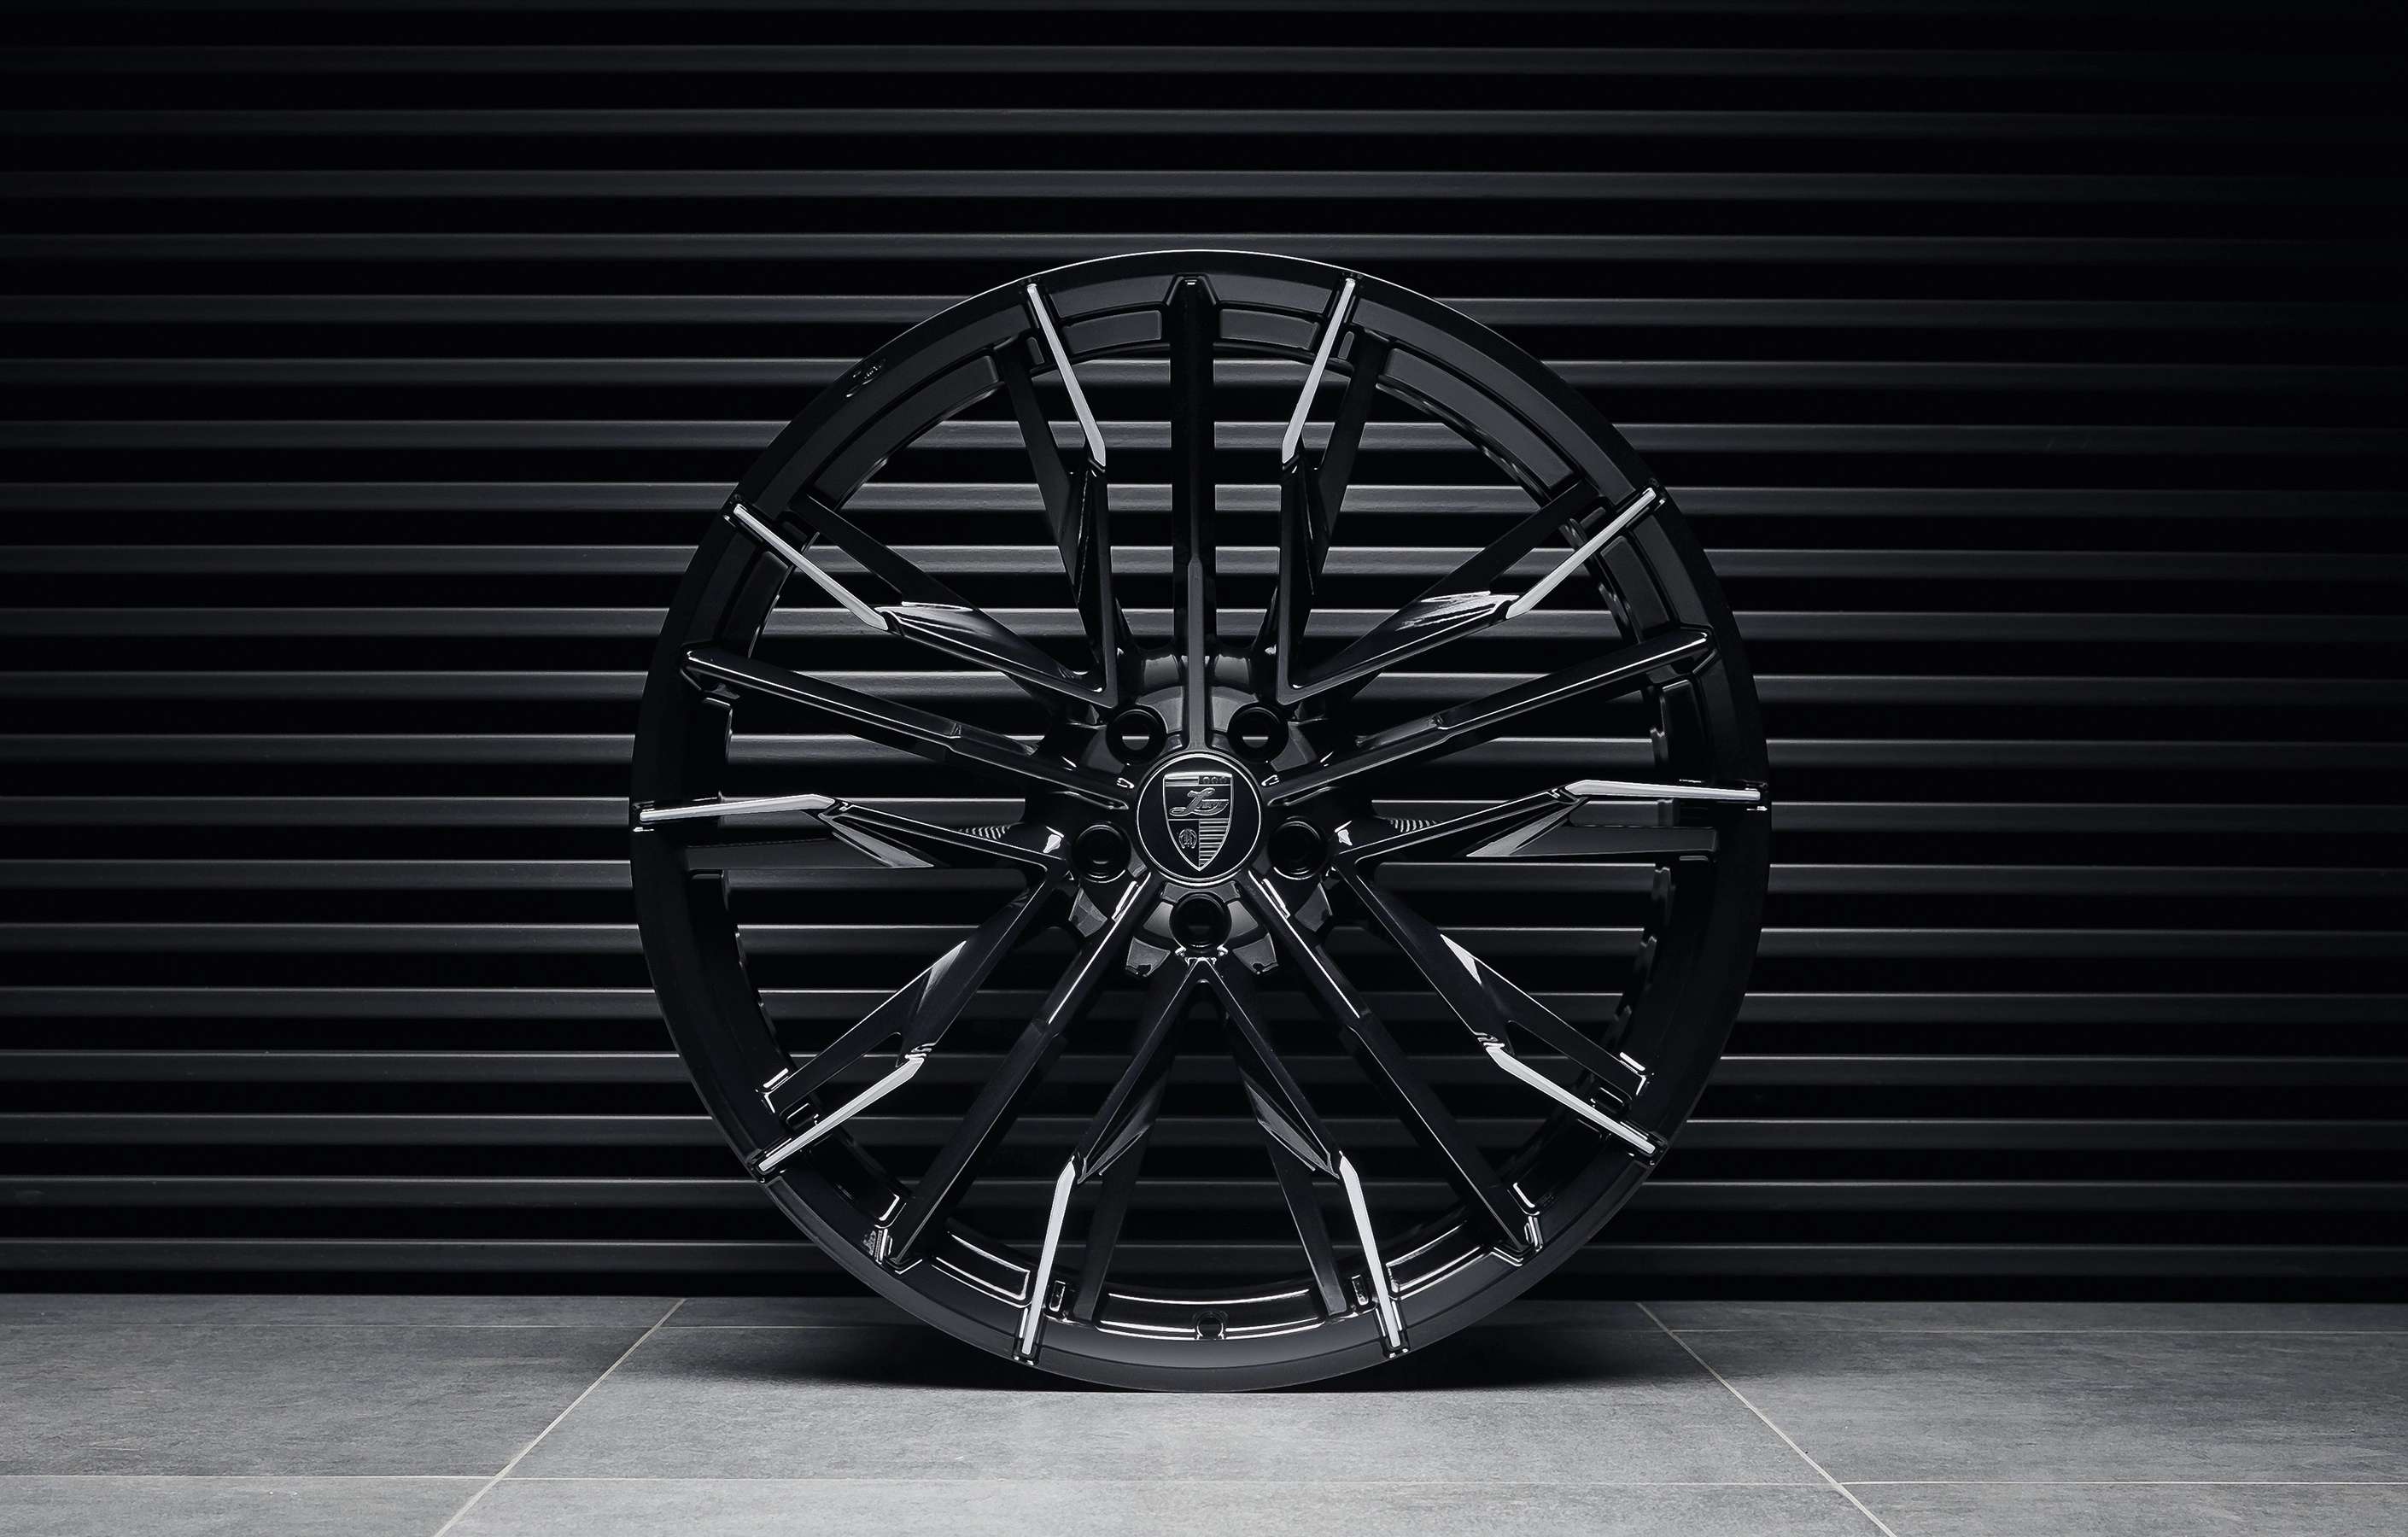 Кованые диски Larte дизайна диаметром 21 дюйм для BMW X3 G01 2020